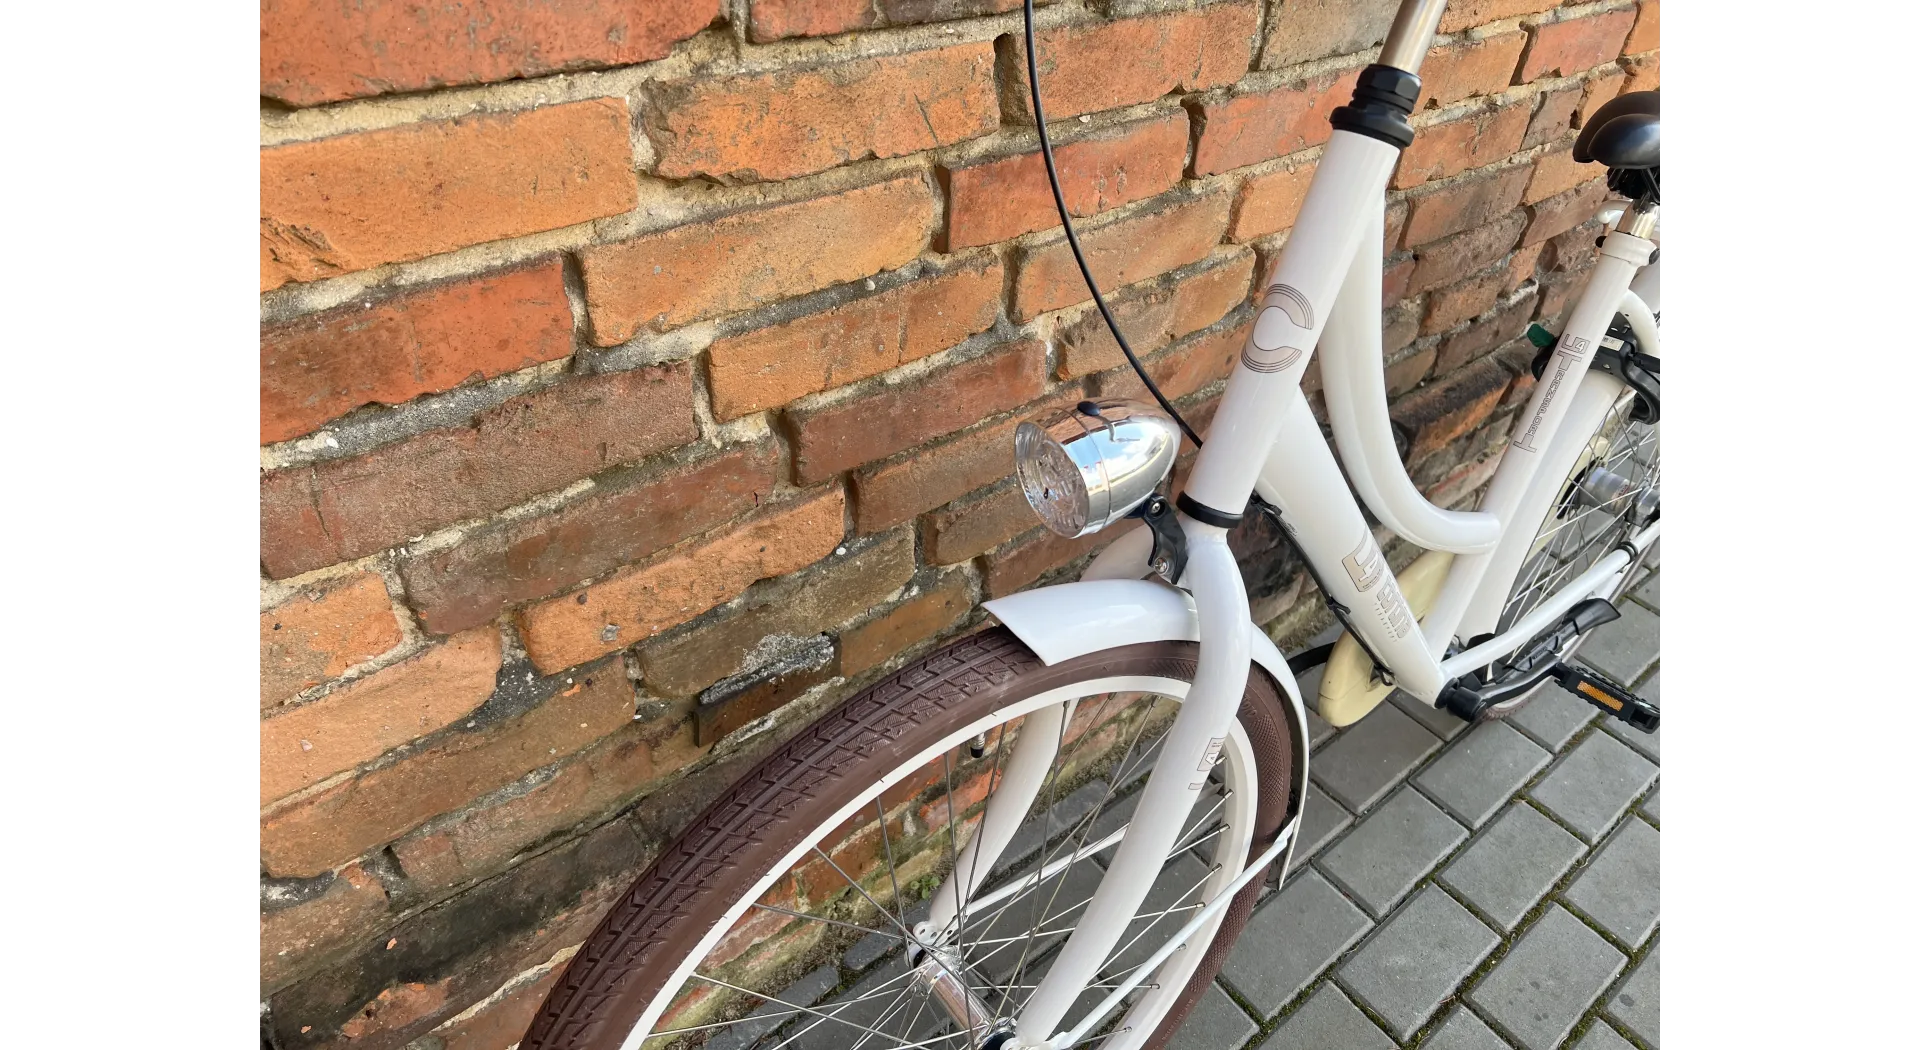 Cortina U4 26'', Nexus 3, rower holenderski